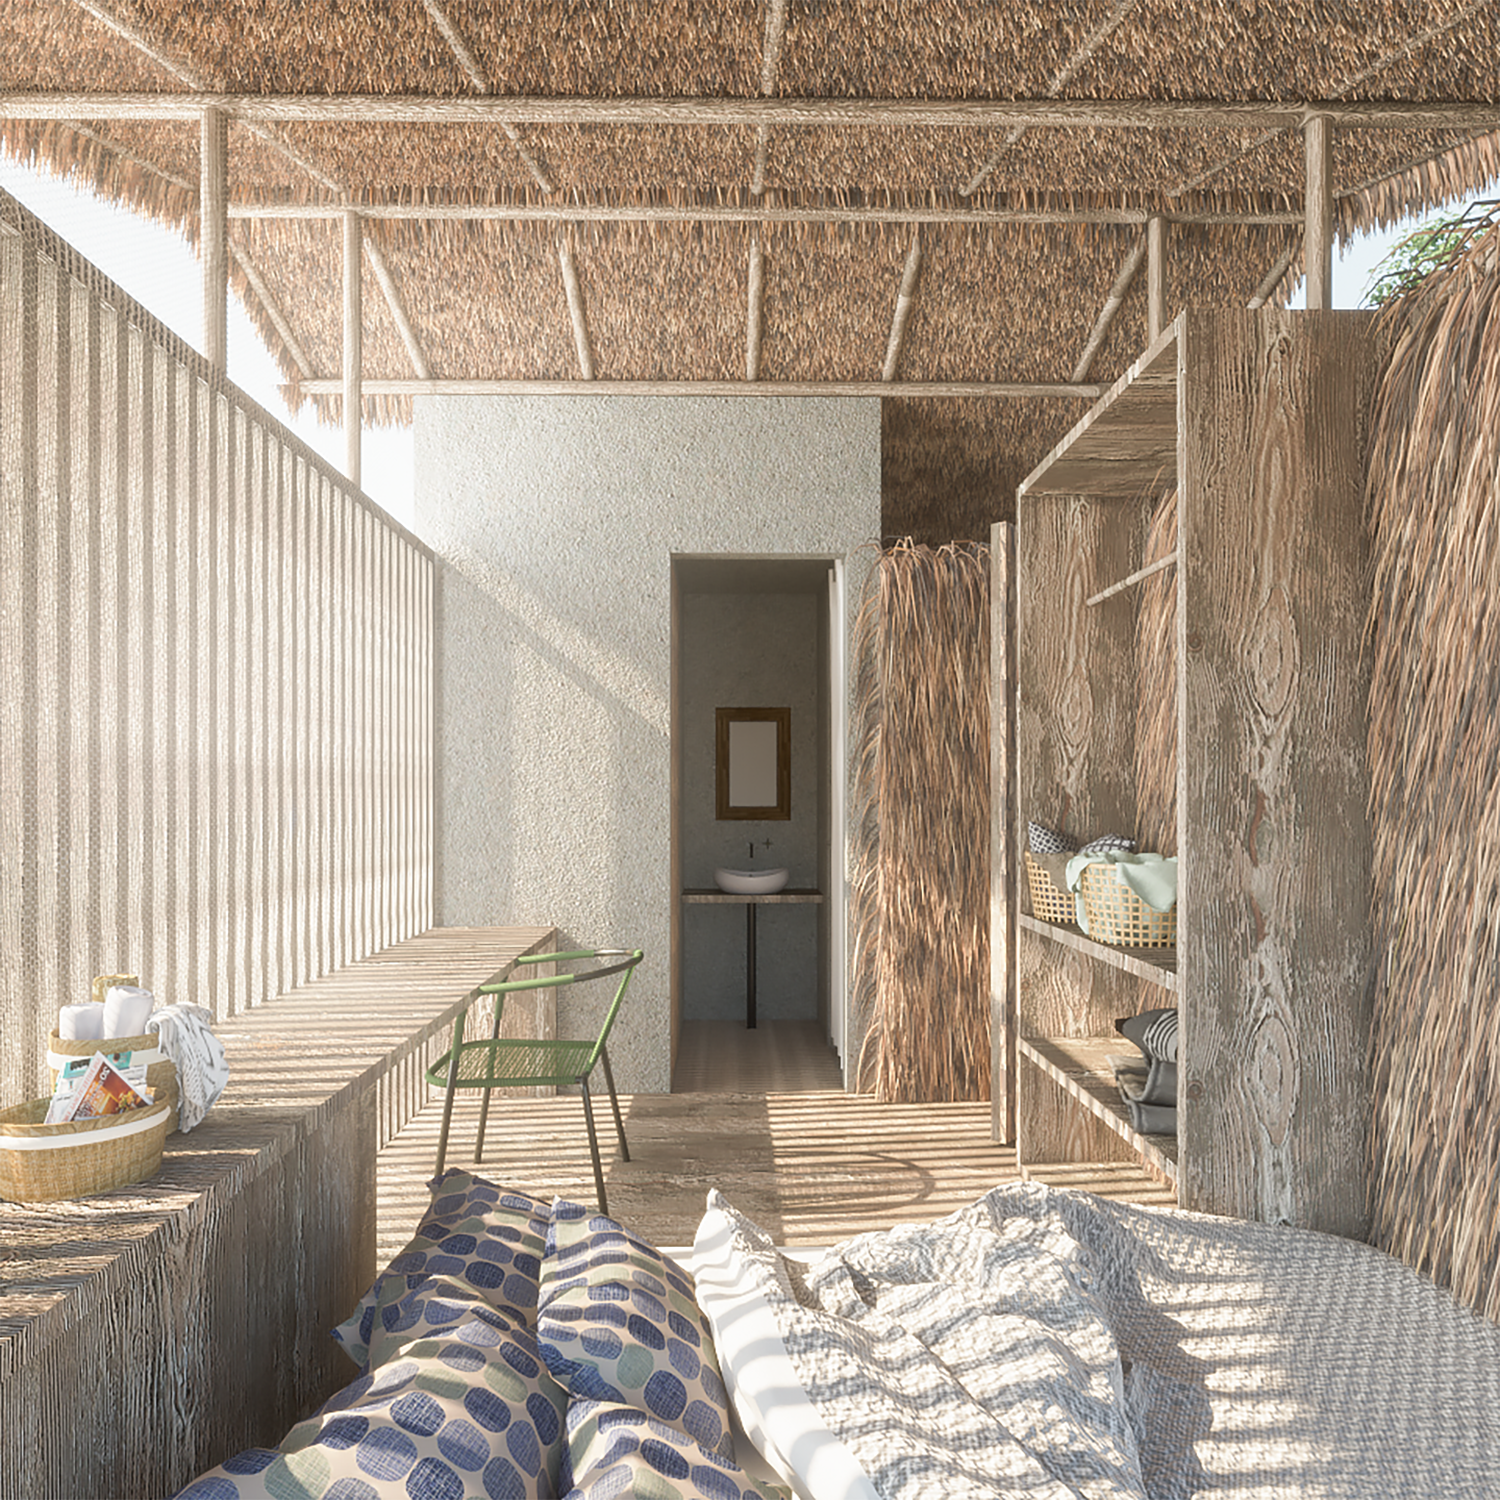 Perspectiva interna da hospedaria com o tradicional telhado de palha (Foto: Amazone-se / Reprodução)